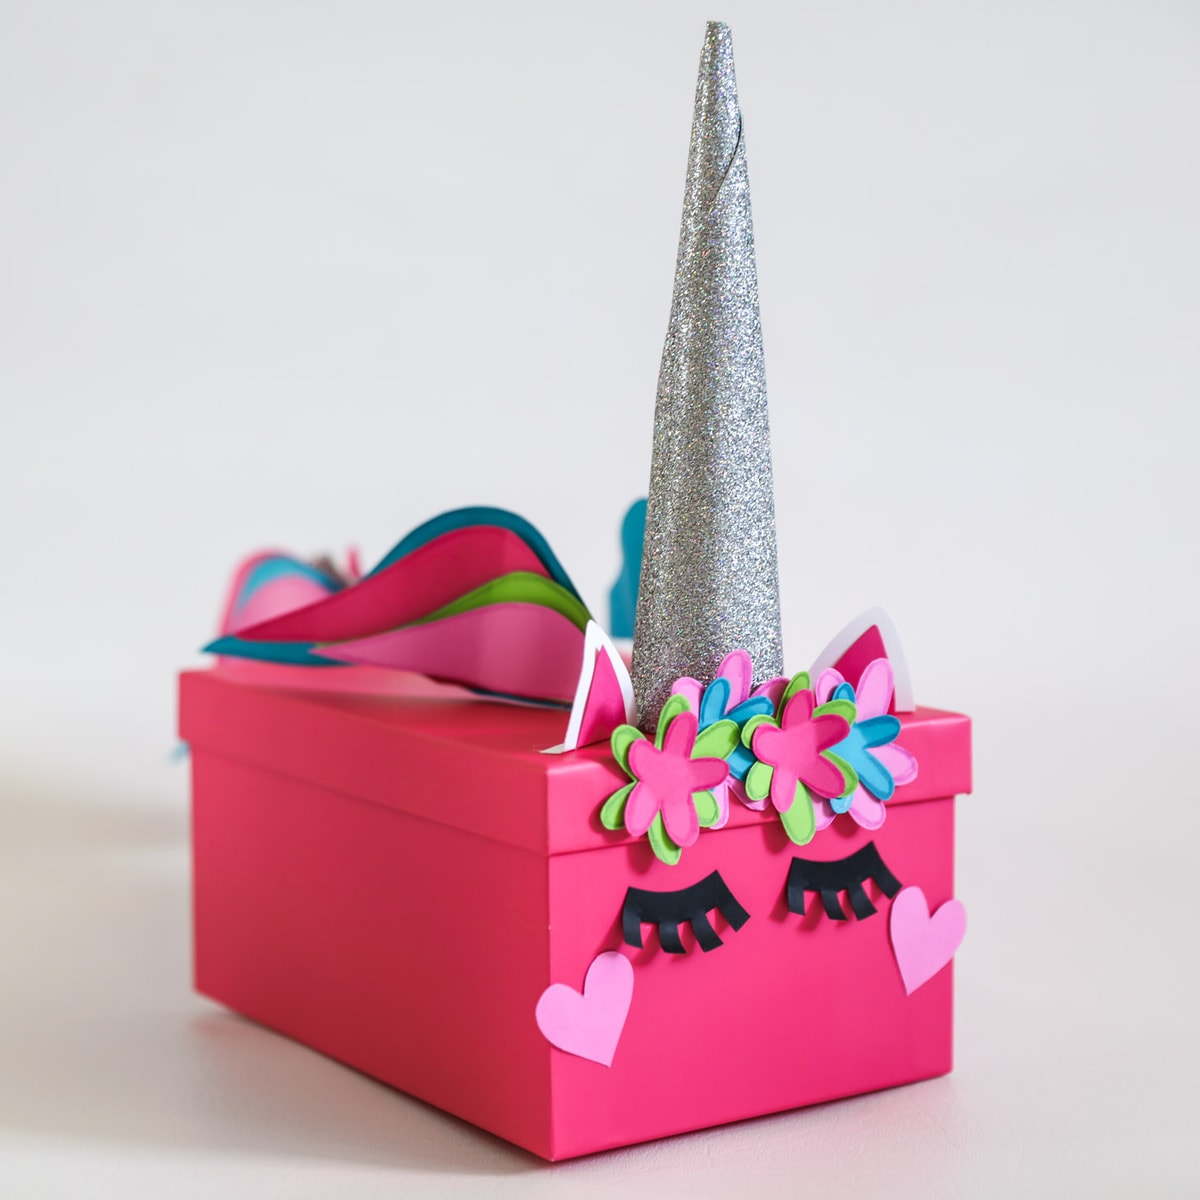 Cute Candy Box Ideas